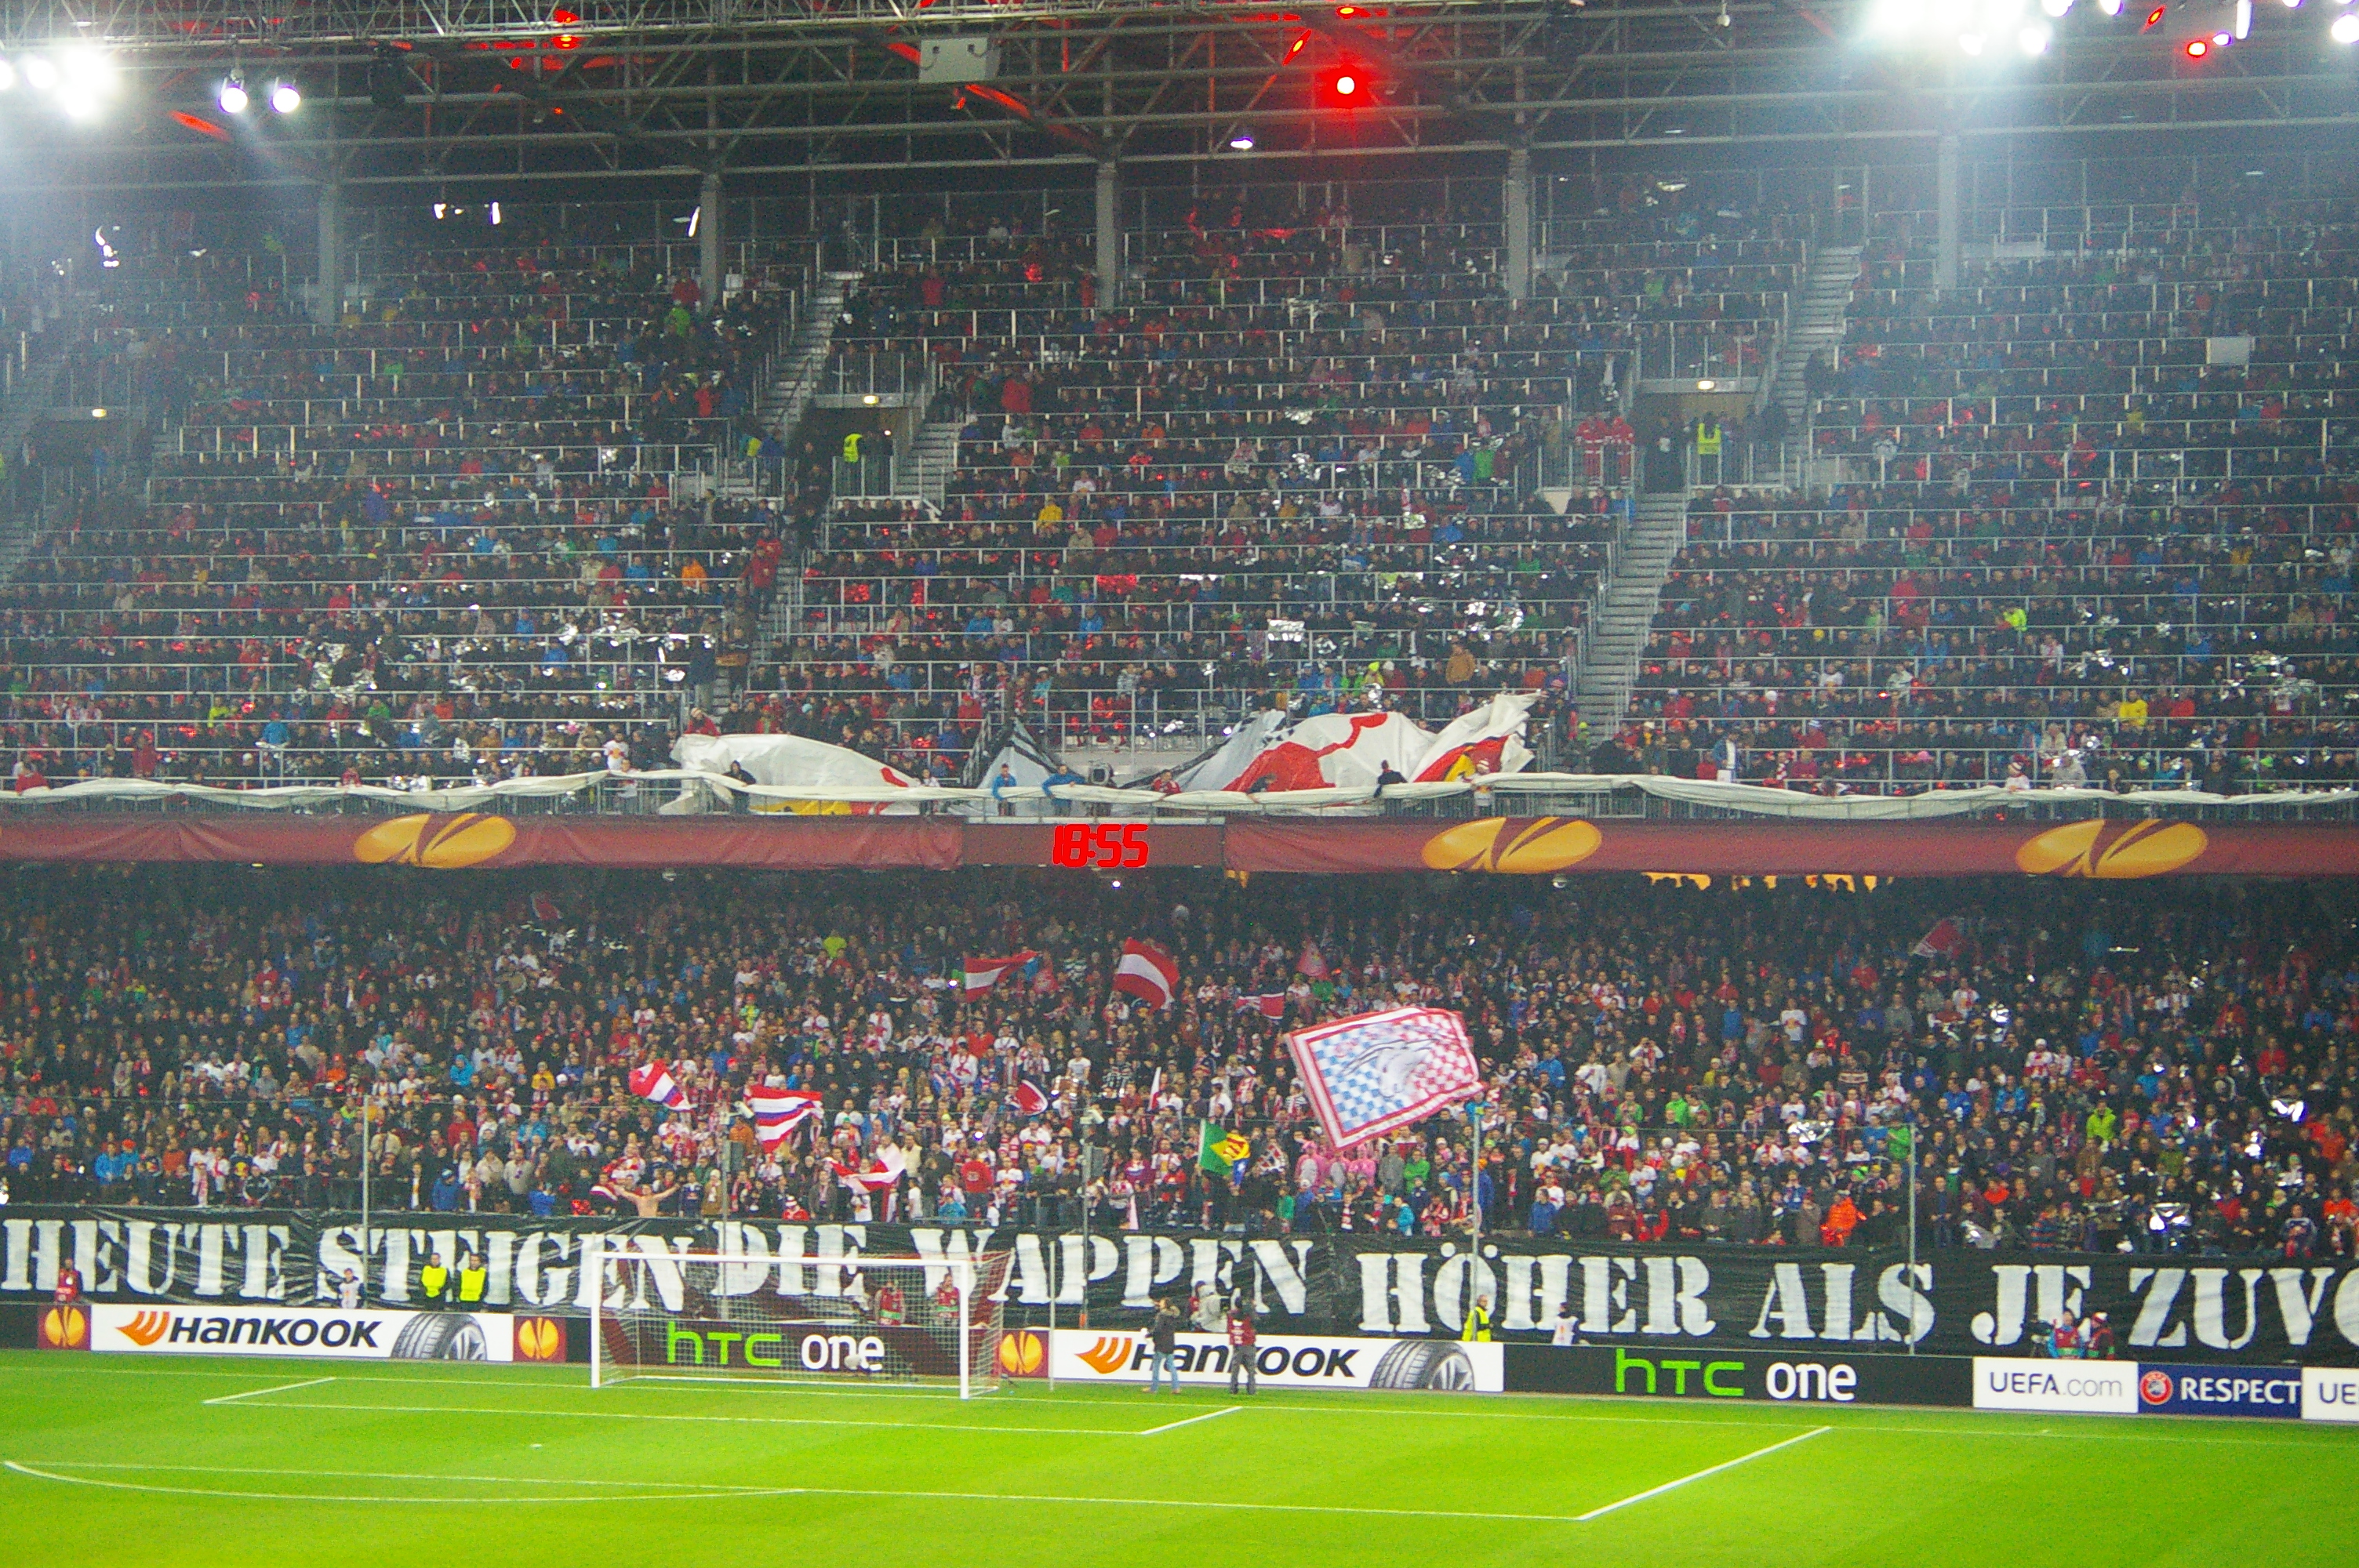 AFC Ajax - Wikipedia